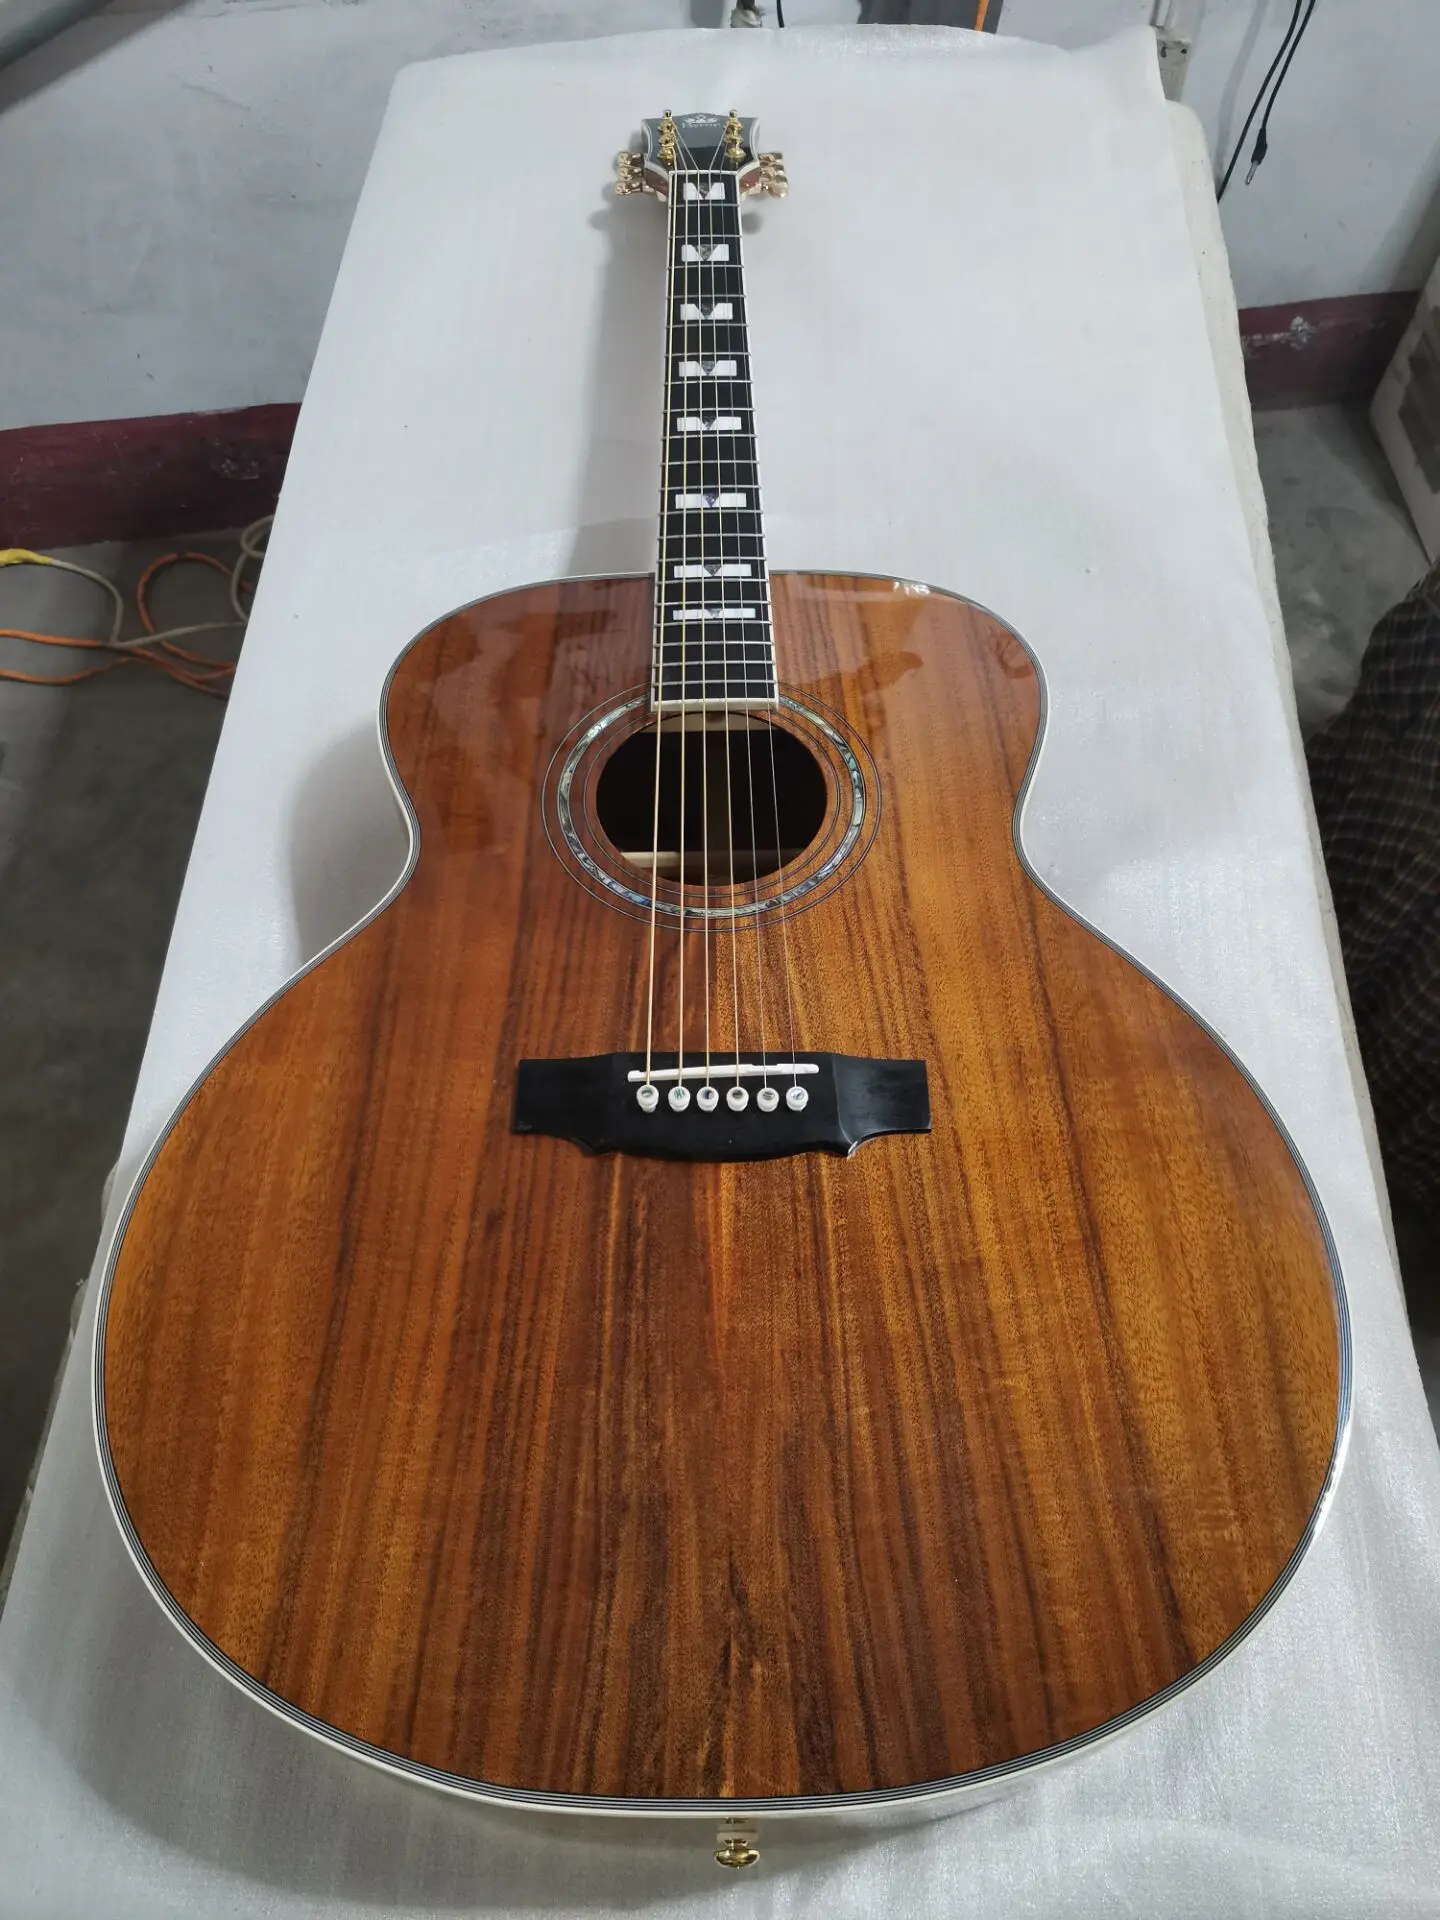 

Гитара из массива дерева КоА, 43 дюйма, под заказ, профессиональная акустическая электрогитара